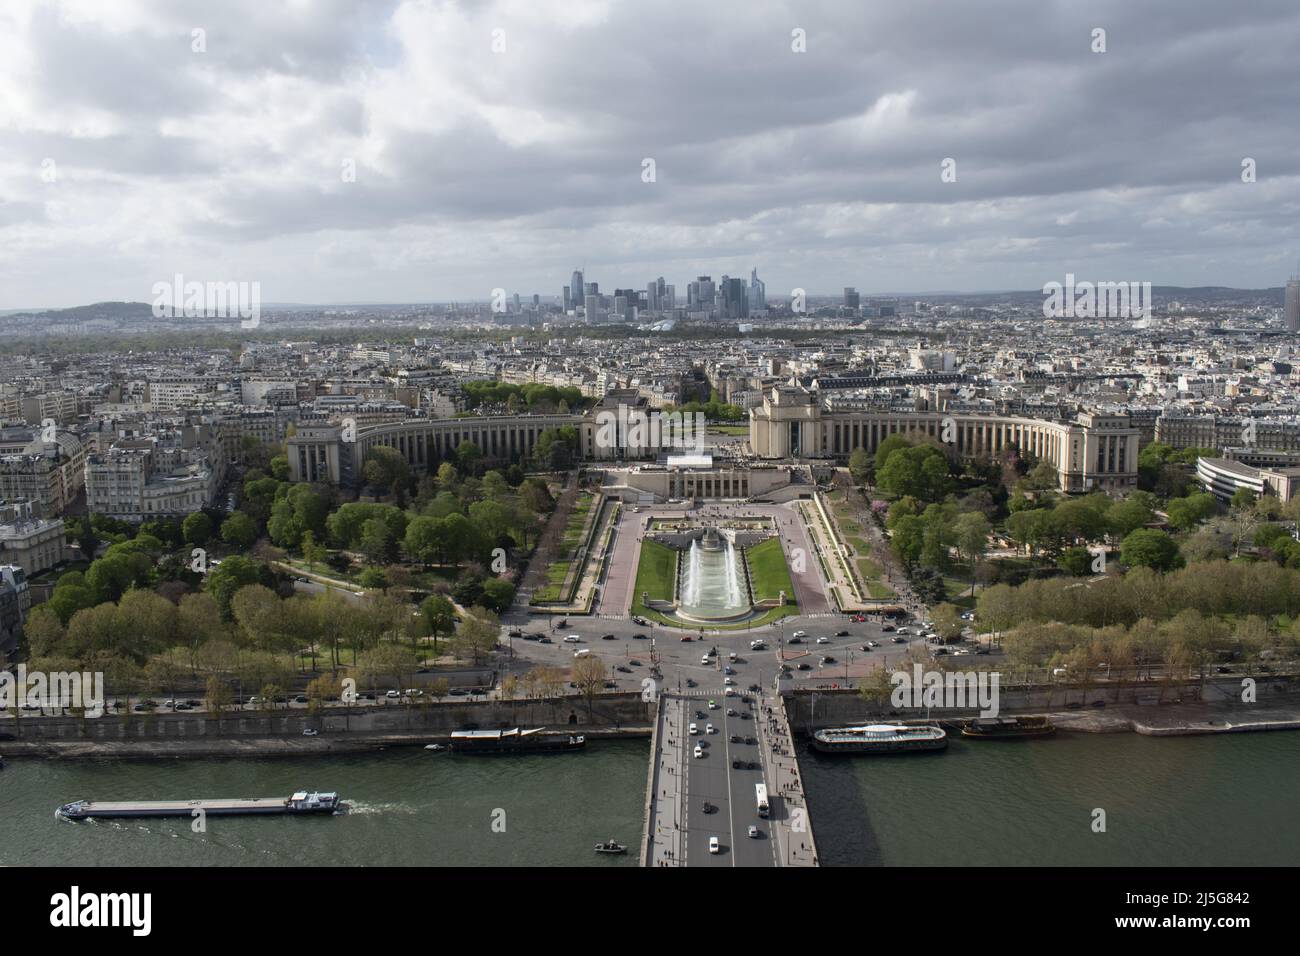 Paris: Luftaufnahme der Skyline mit der seine, den Trocadero-Gärten und den Wolkenkratzern des La Defense-Viertels von der Spitze des Eiffelturms aus gesehen Stockfoto